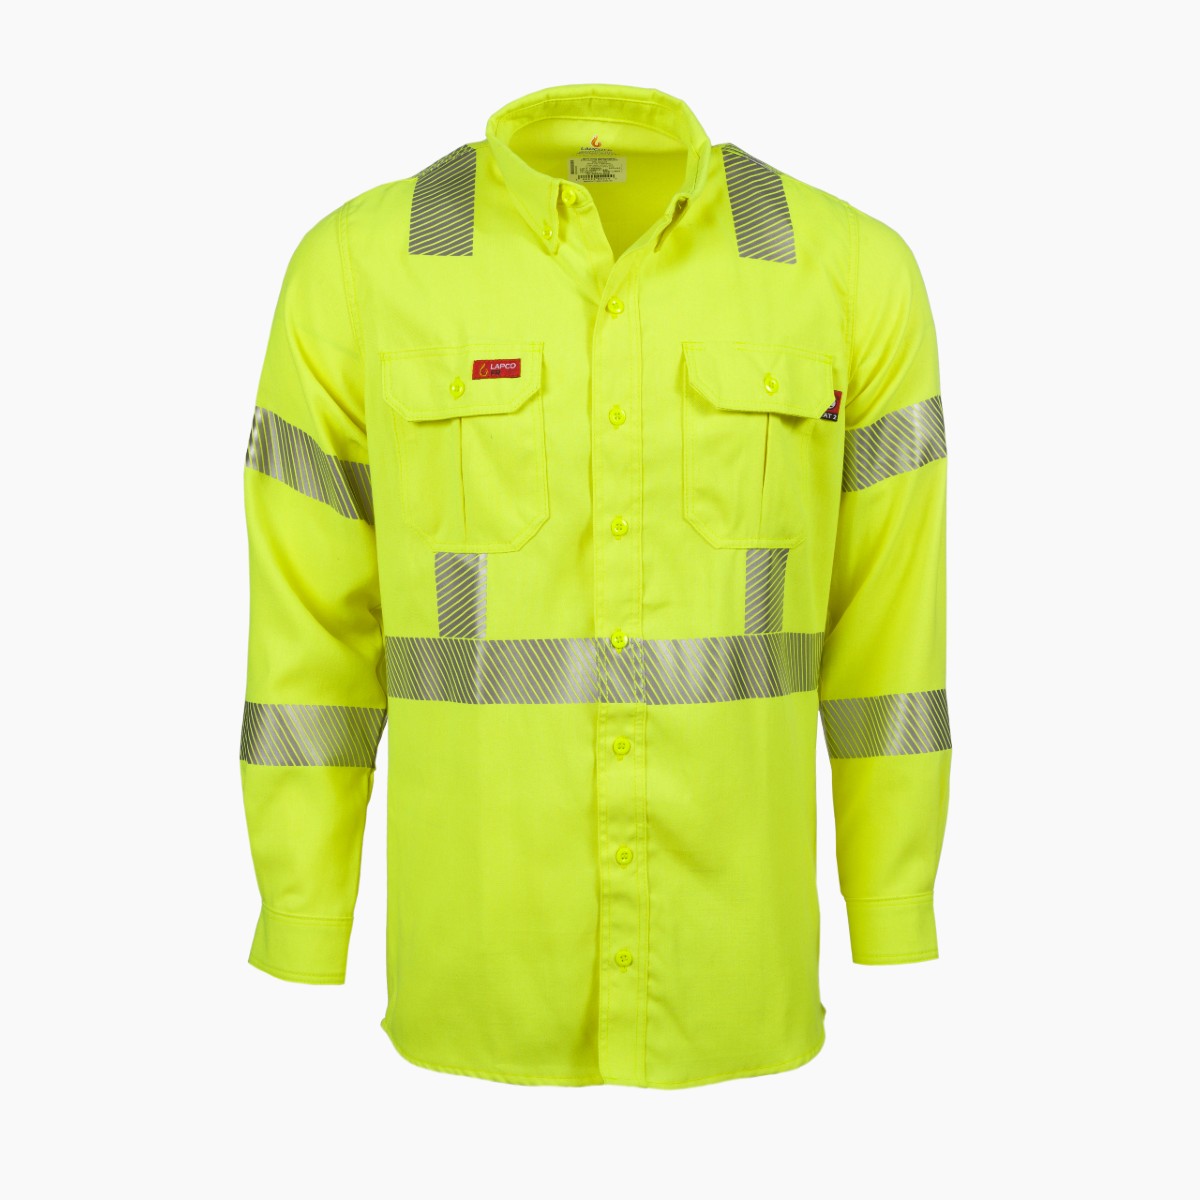 LAPCO FR Modern Hi-Vis Uniform Shirt in Hi-Vis Yellow